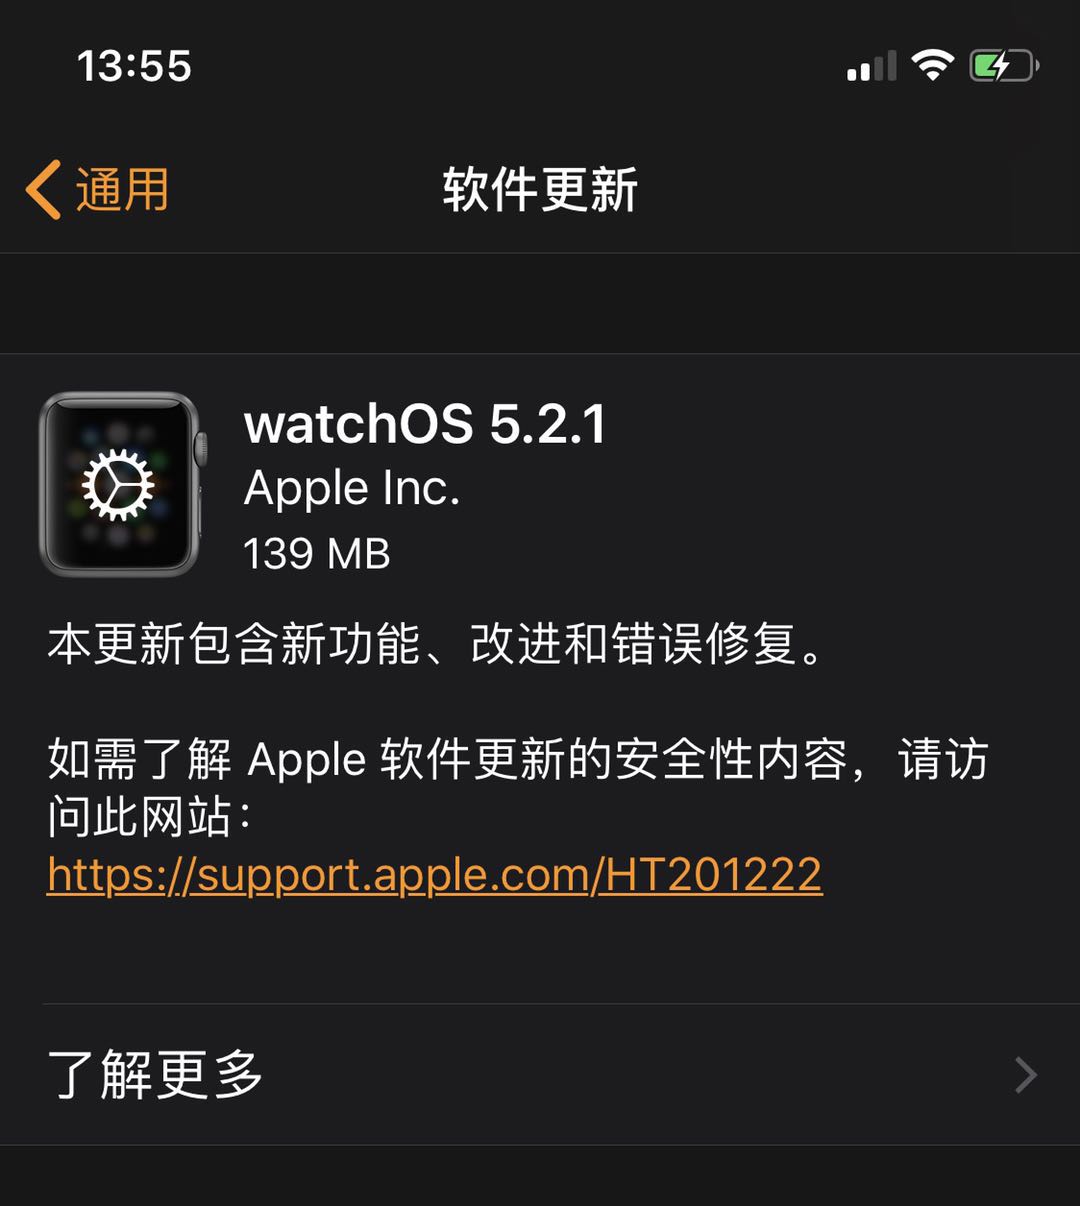 iOS 12.3غ̨ϻ watchOS 5.2.1